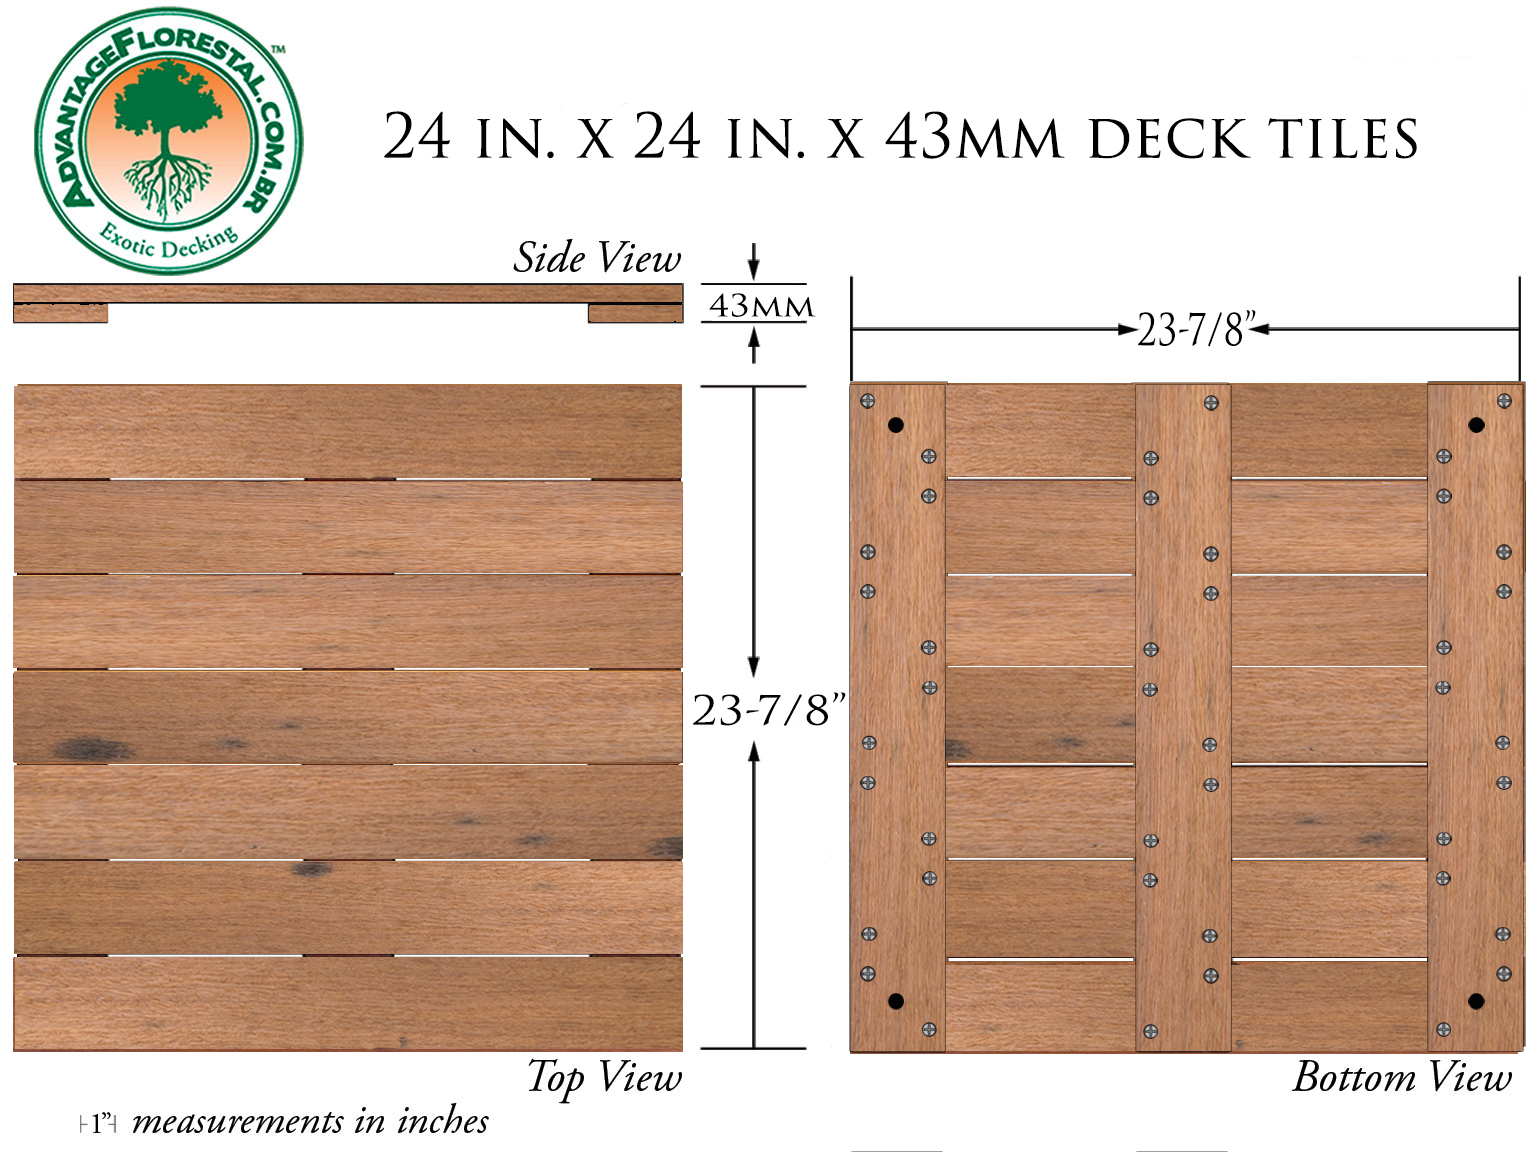 Itauba Deck Tile 24 in. x 24 in. x 43mm